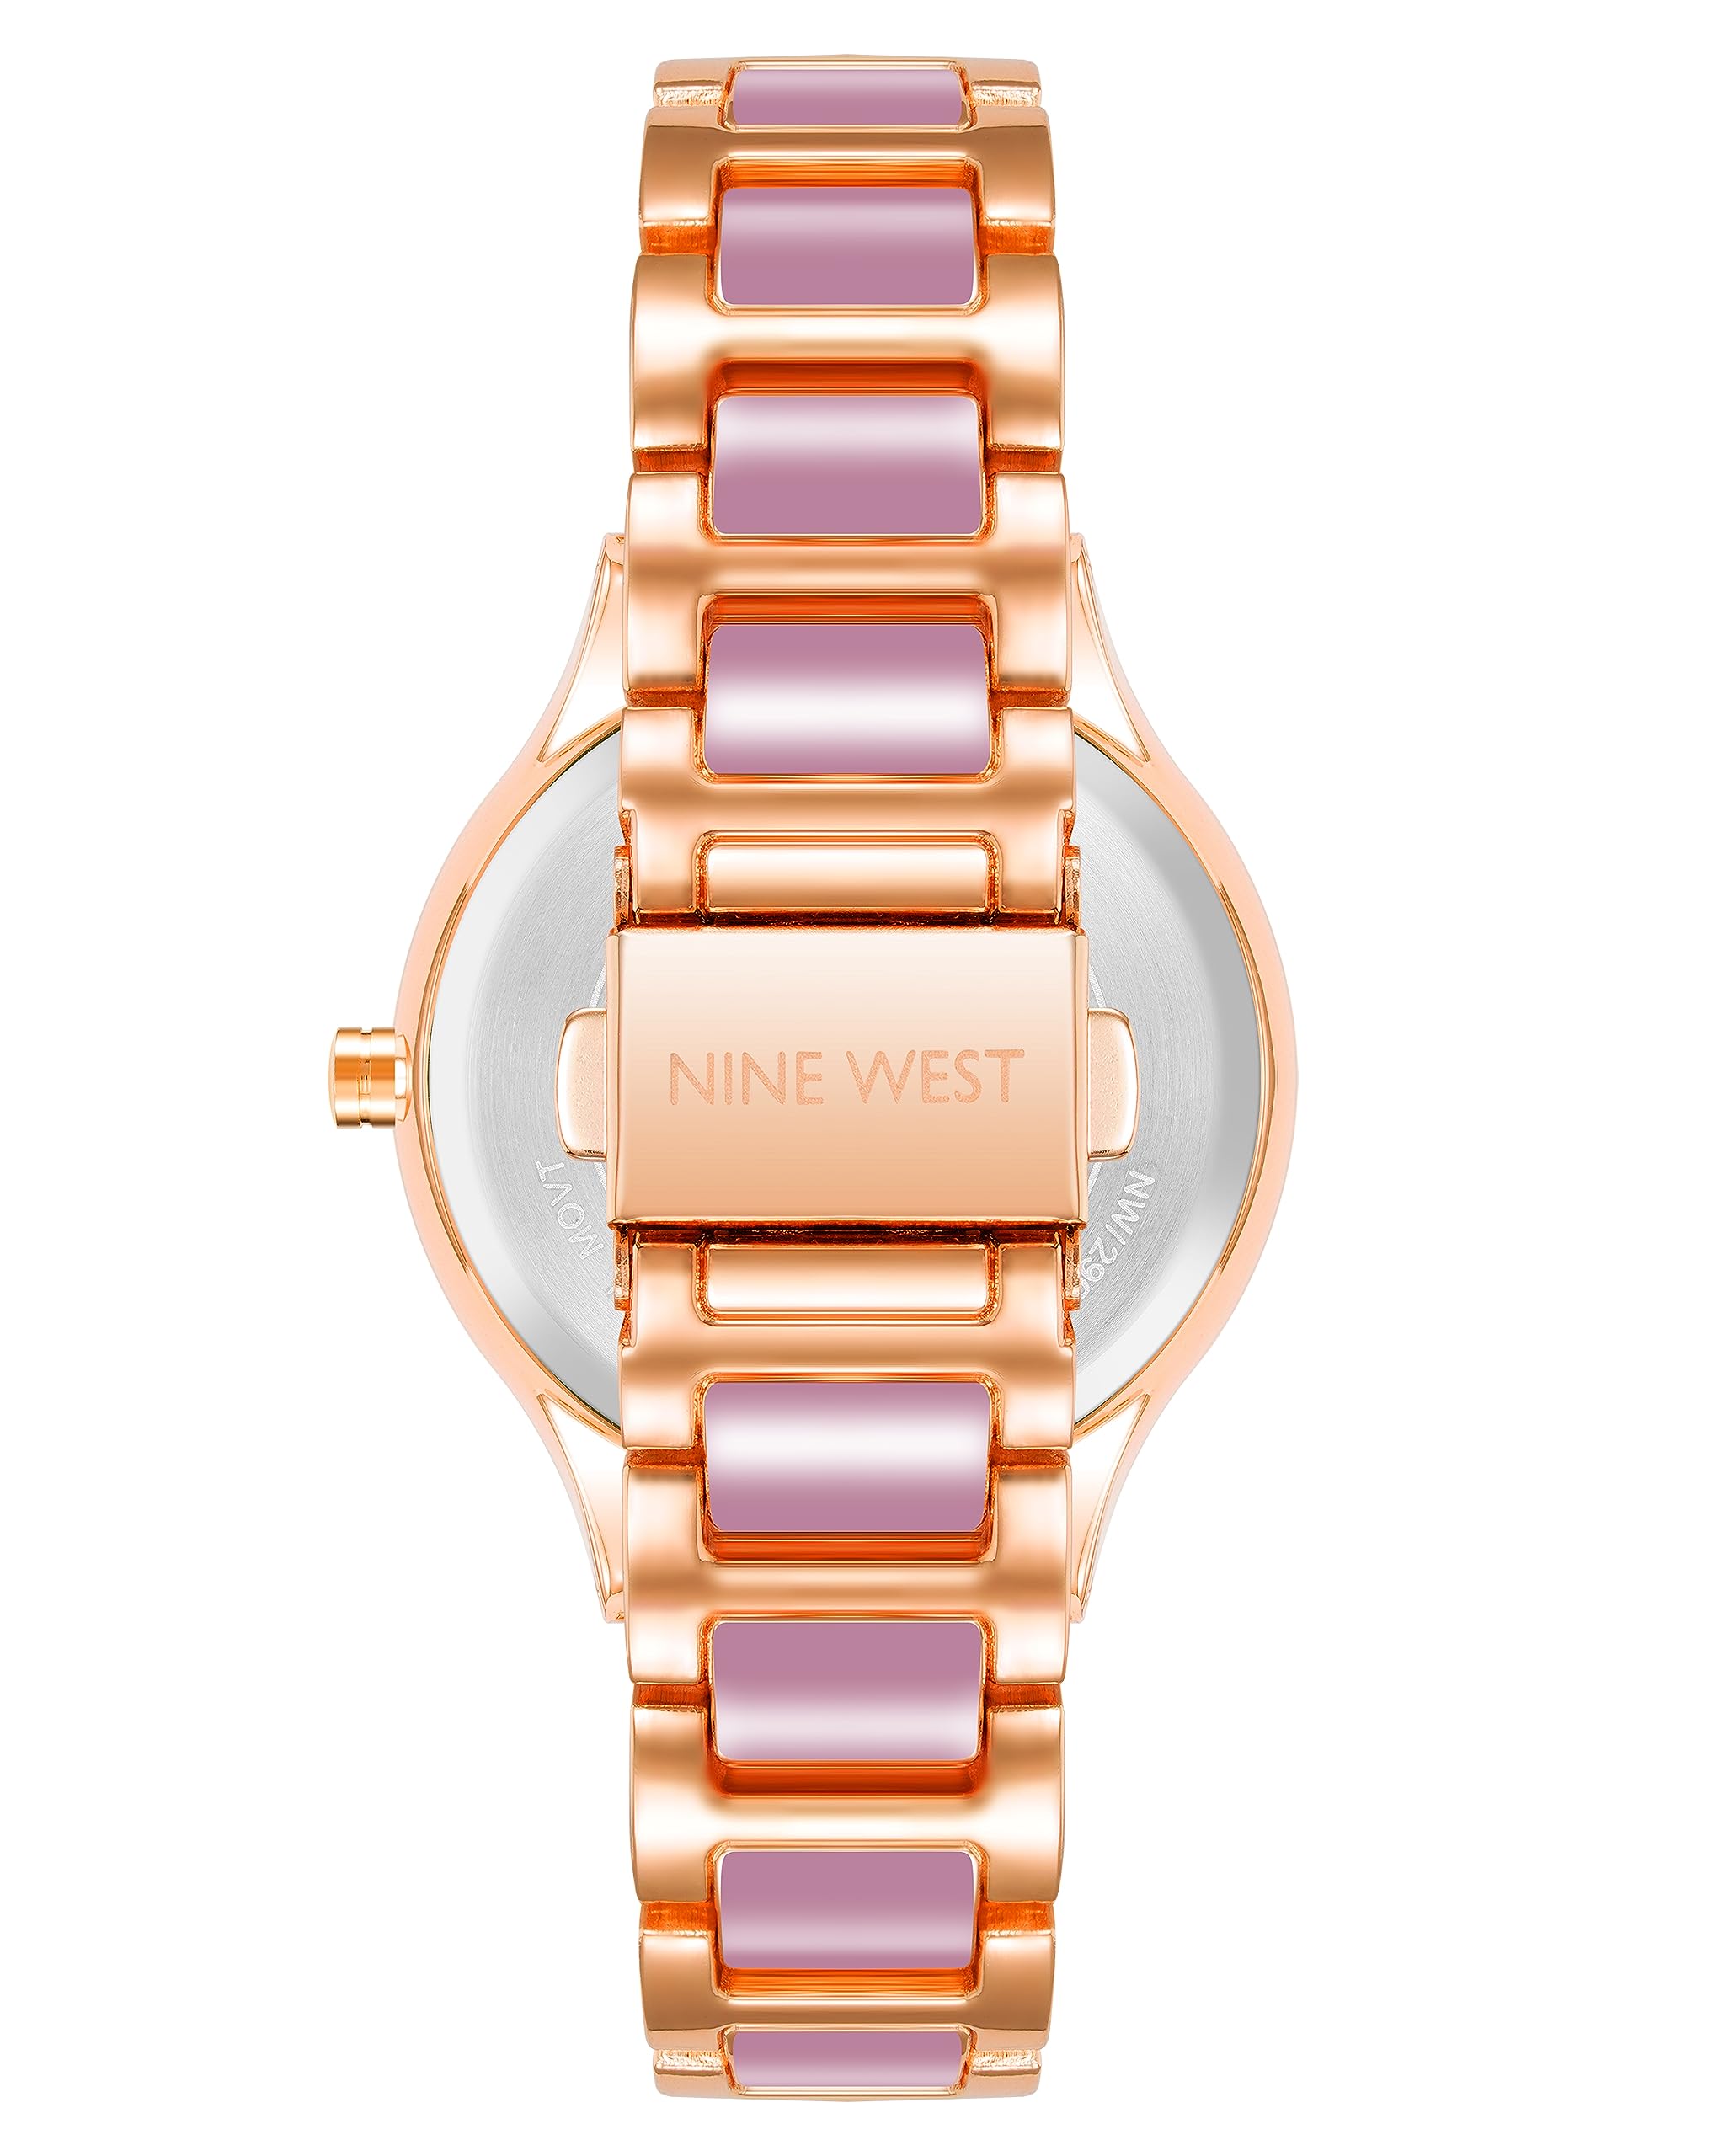 Nine West Women's Bracelet Watch